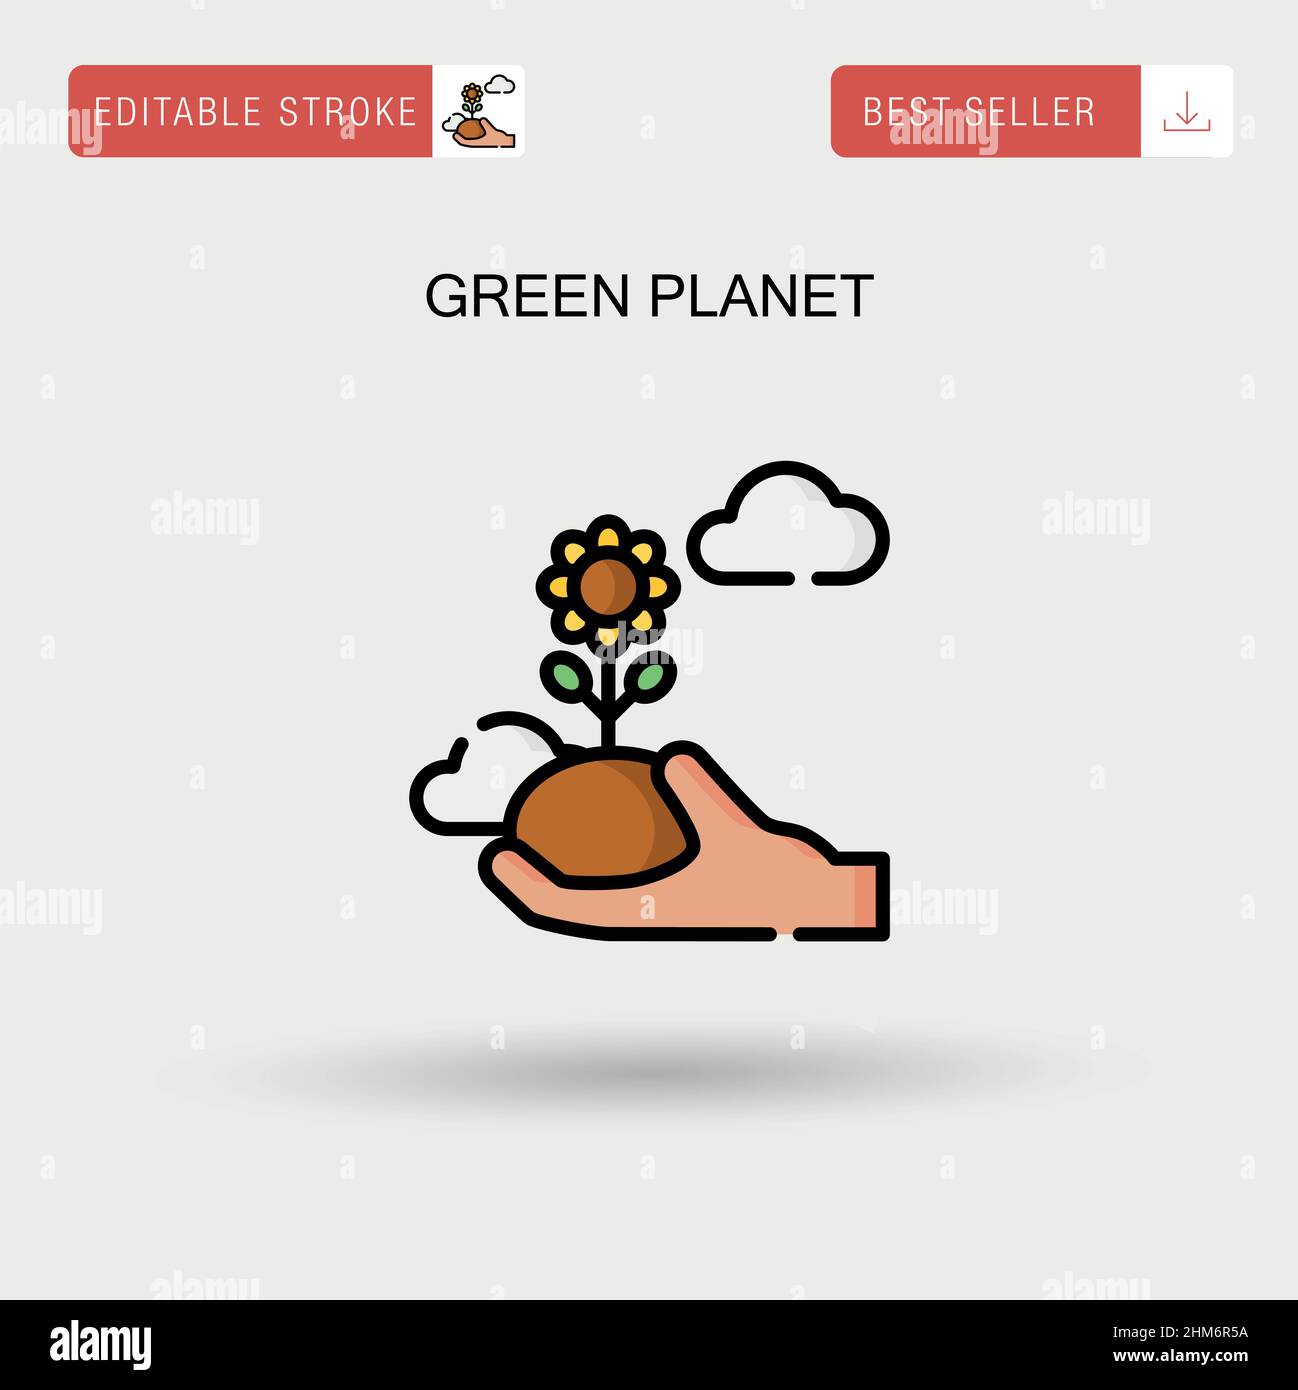 Einfaches Vektorsymbol für grünen Planeten. Stock Vektor